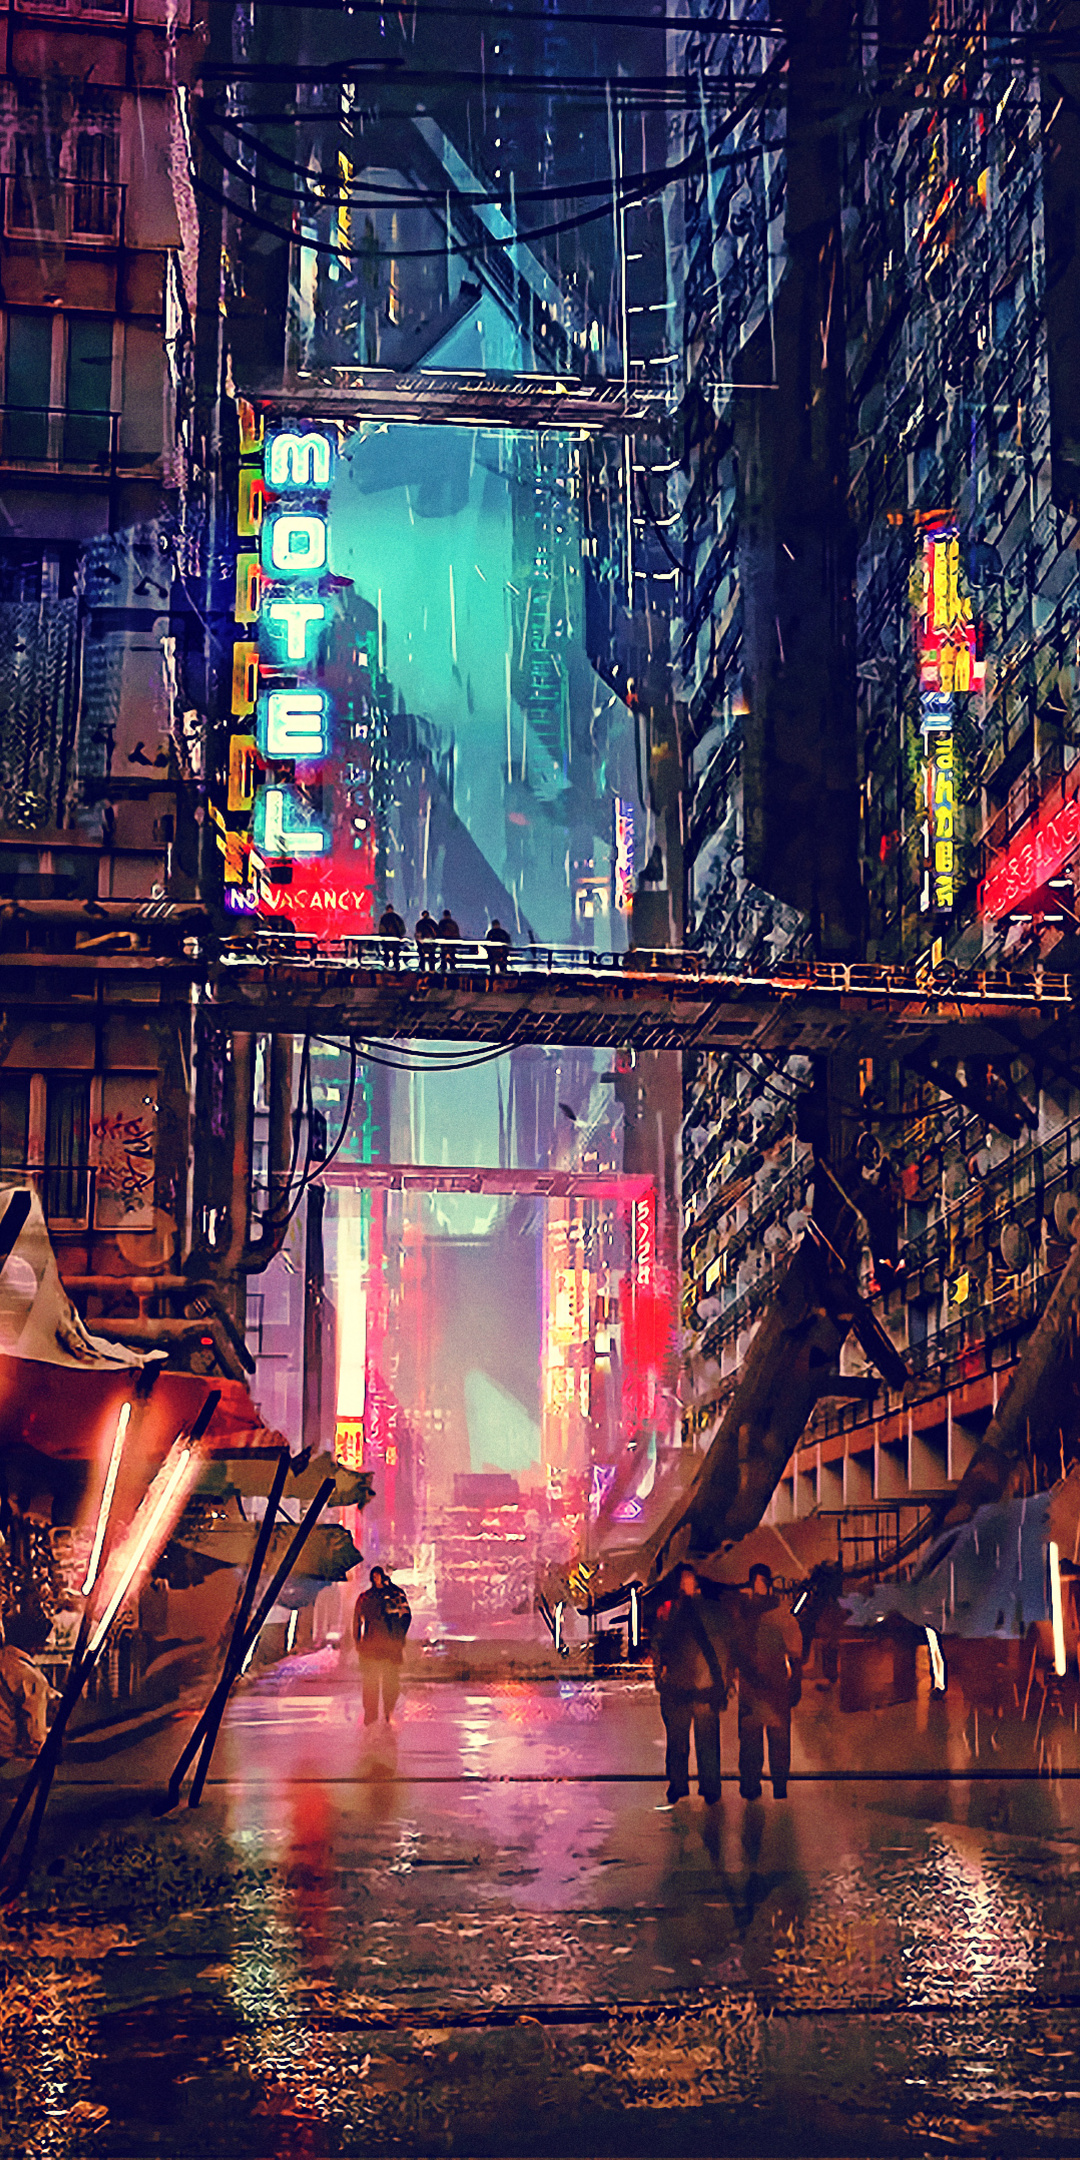 science-fiction-cyberpunk-futuristic-city-digital-art-4k-jf.jpg